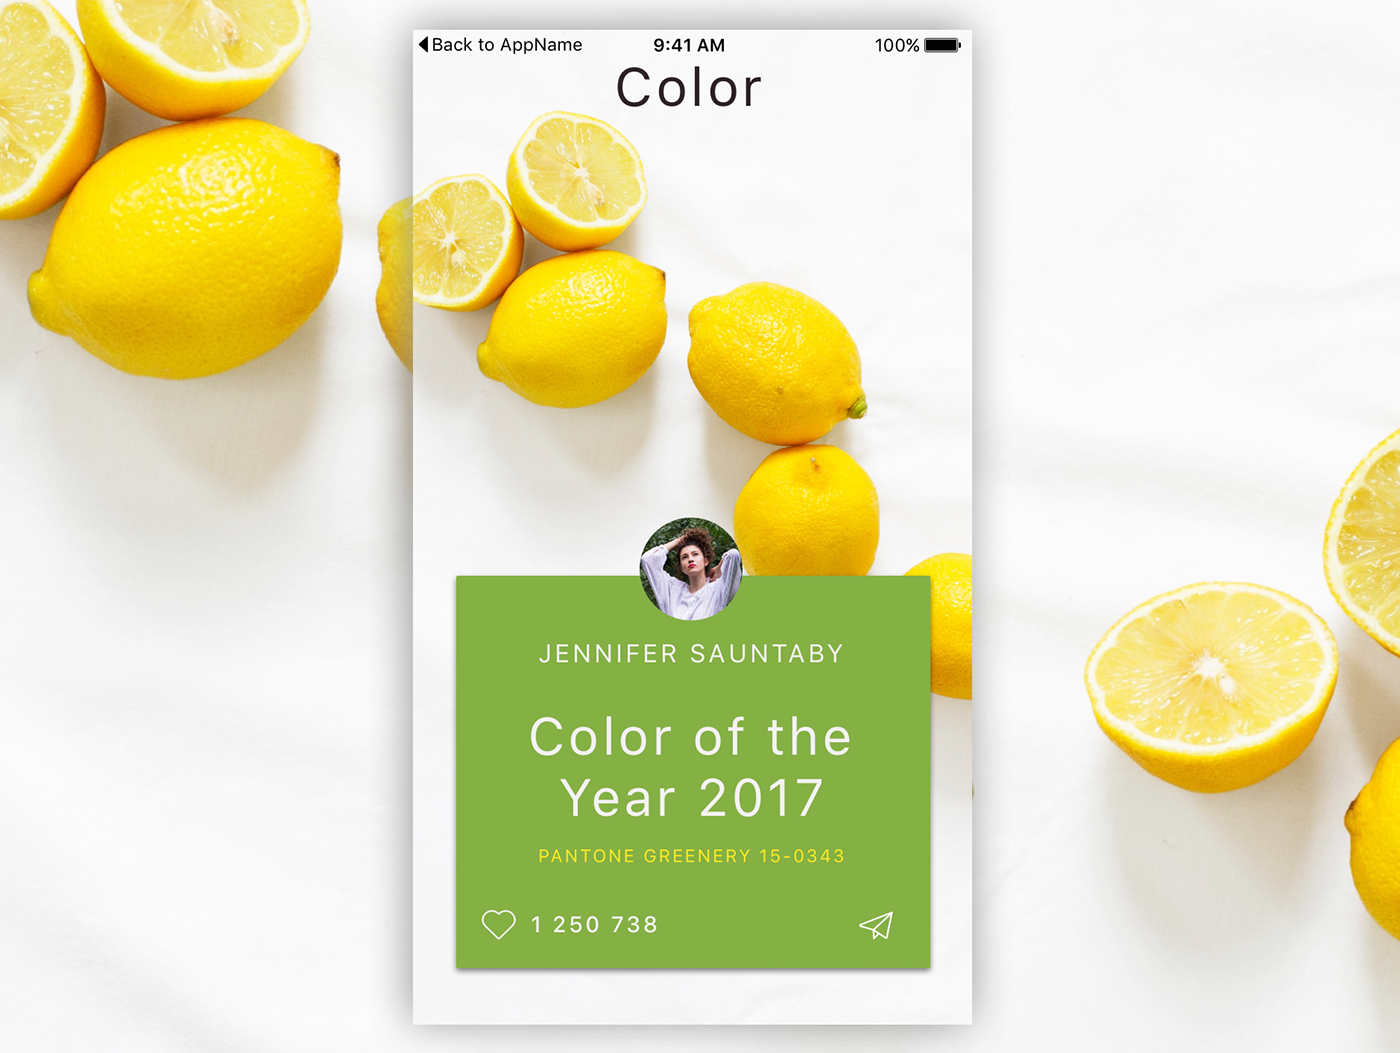 color 2017 pantone Mobile Application app lemon green yellow Fruit citrus greenery